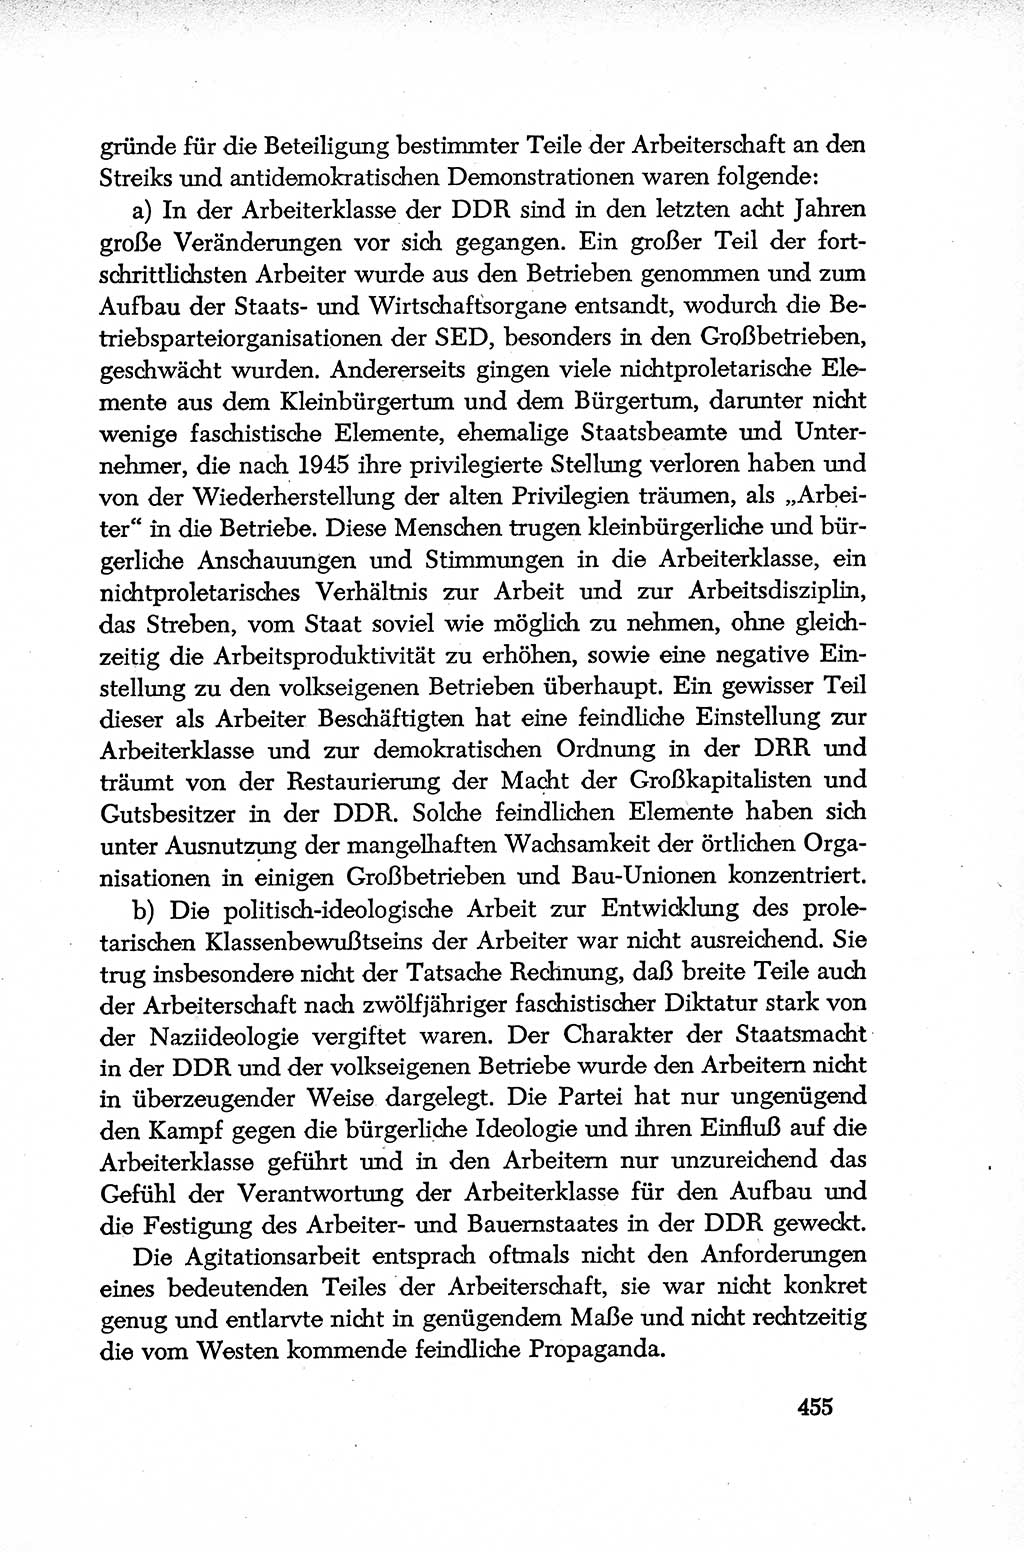 Dokumente der Sozialistischen Einheitspartei Deutschlands (SED) [Deutsche Demokratische Republik (DDR)] 1952-1953, Seite 455 (Dok. SED DDR 1952-1953, S. 455)